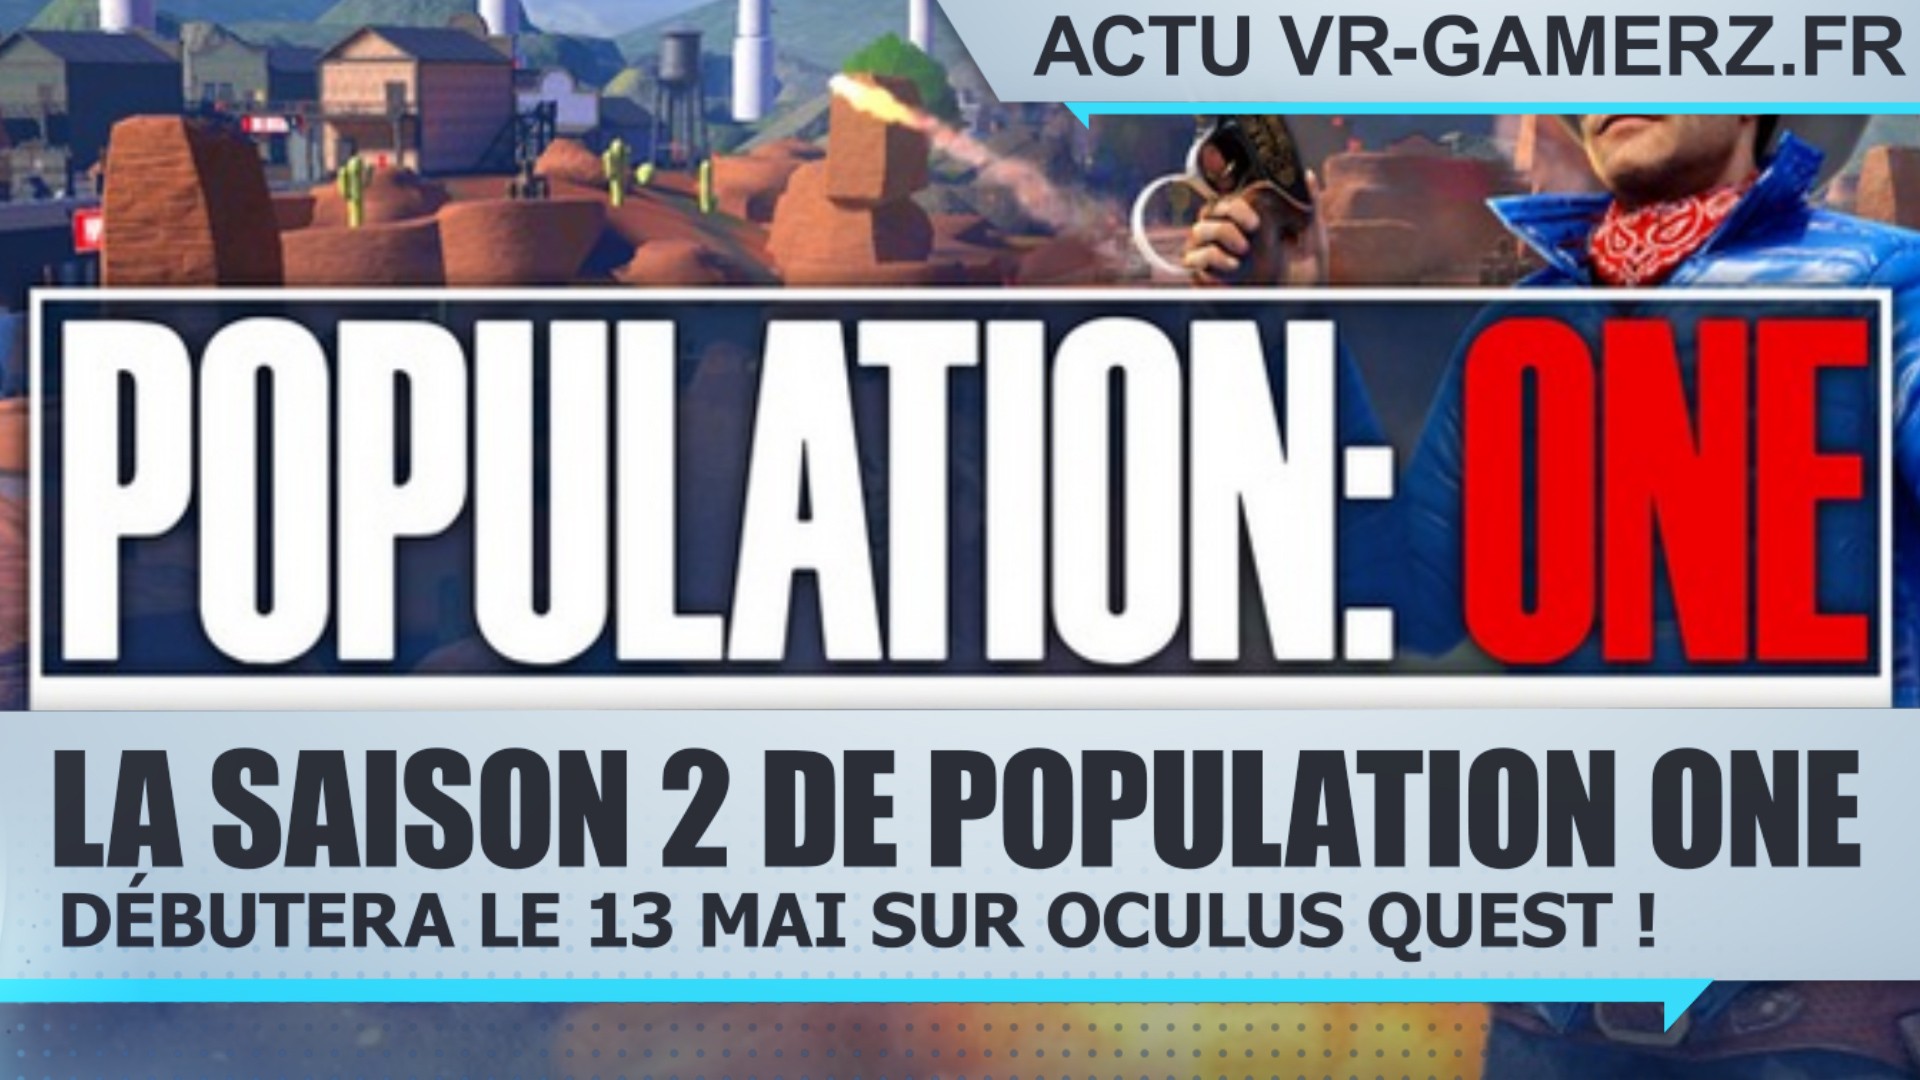 La saison 2 de Population One débutera le 13 Mai sur Oculus quest !